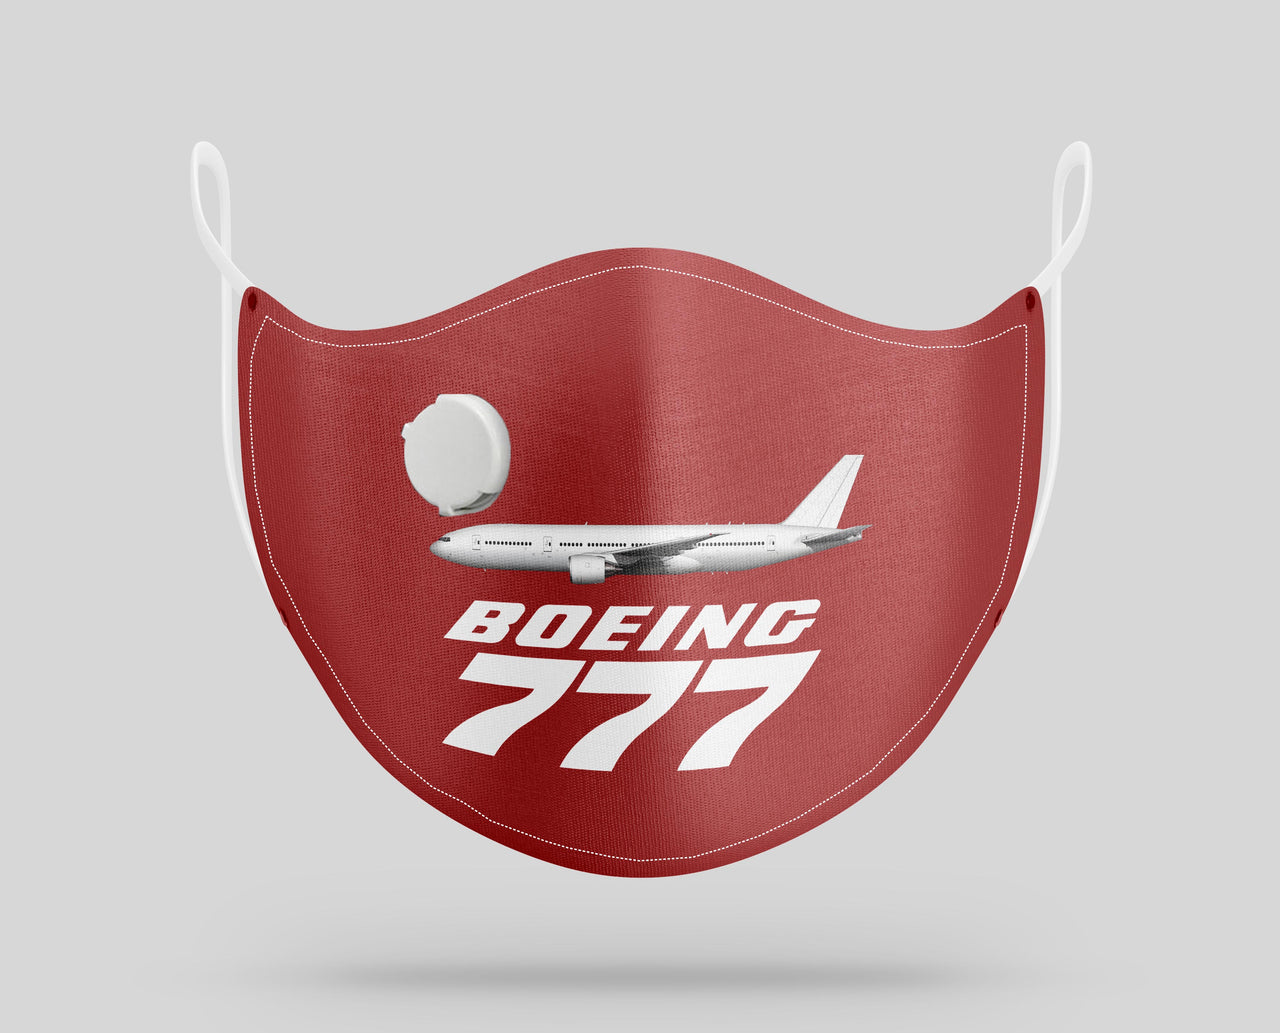 The Boeing 777 Designed Face Masks